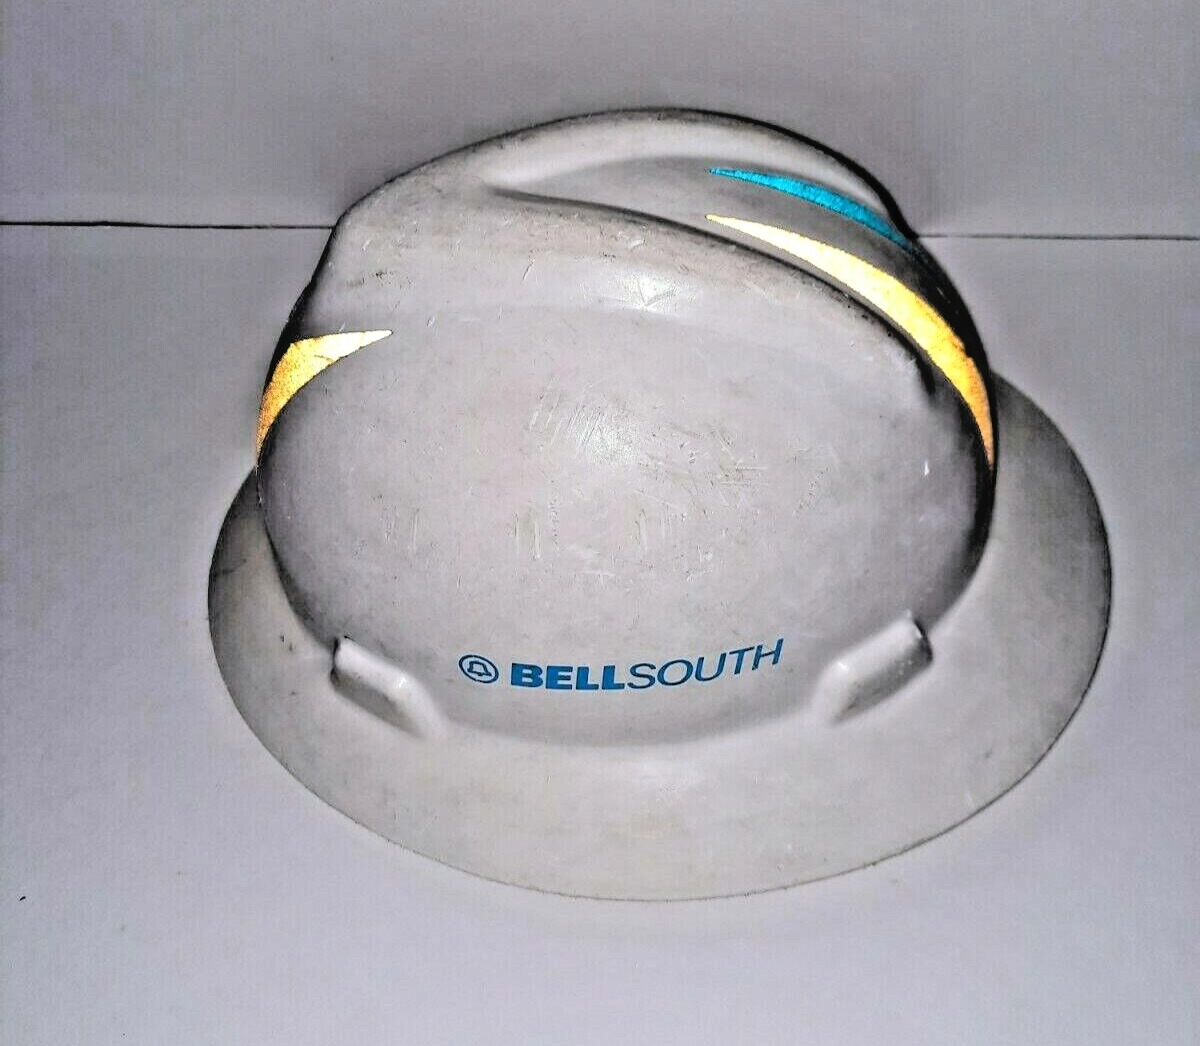 Bellsouth Vintage Safety Helmet 1990s Fully Functional Usable White Helmet